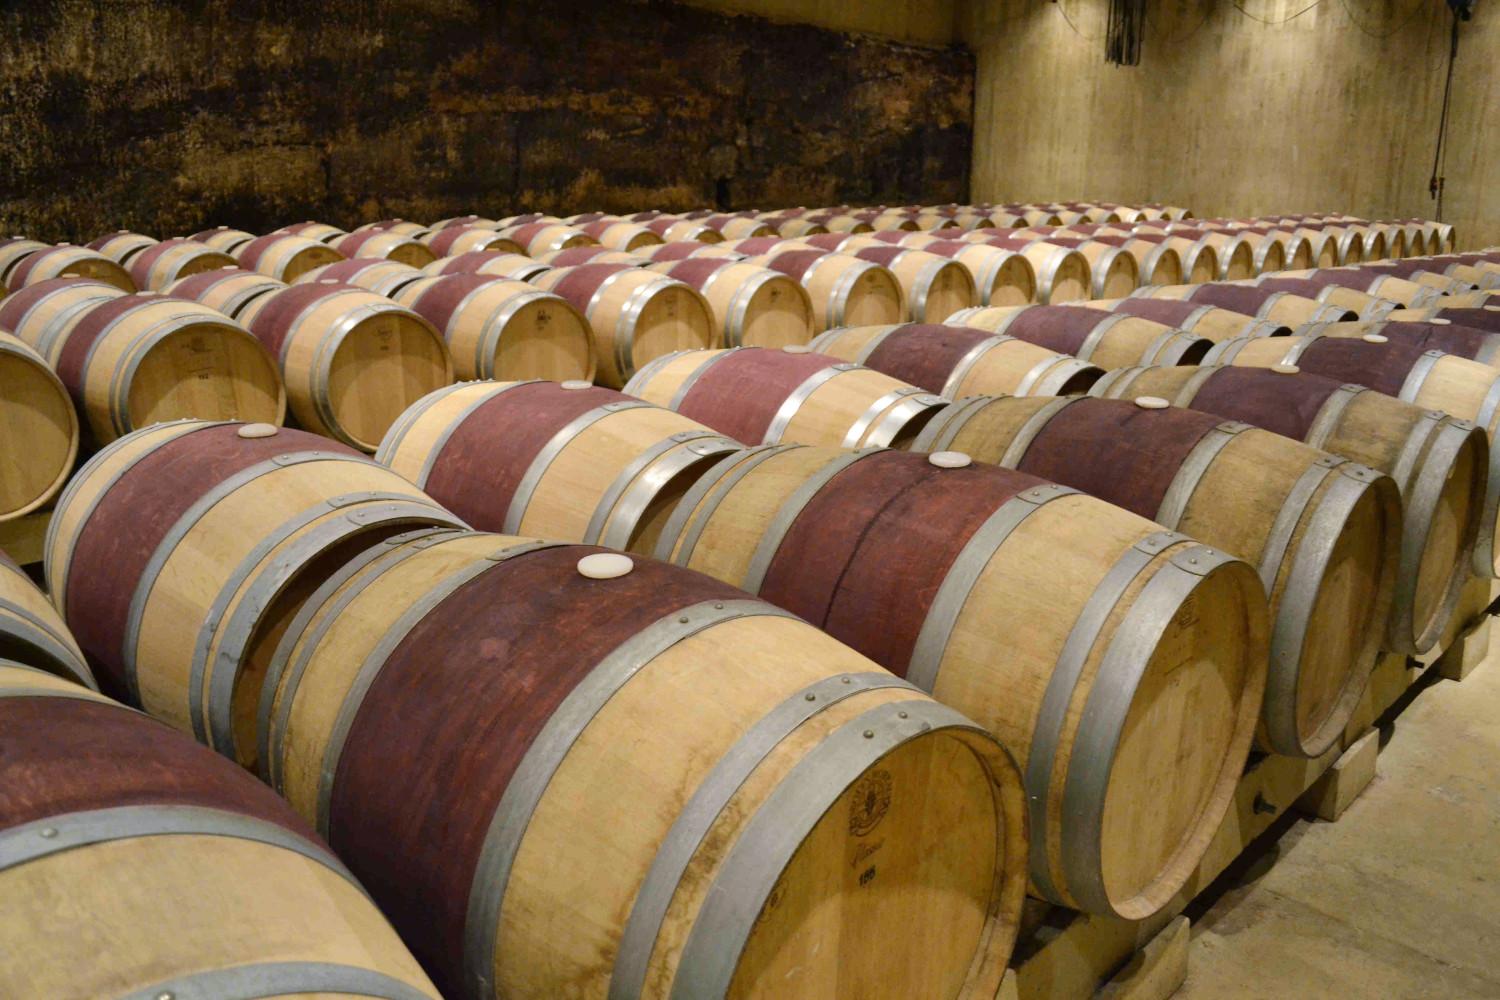 Oak barrels in a winery in Rioja, Spain